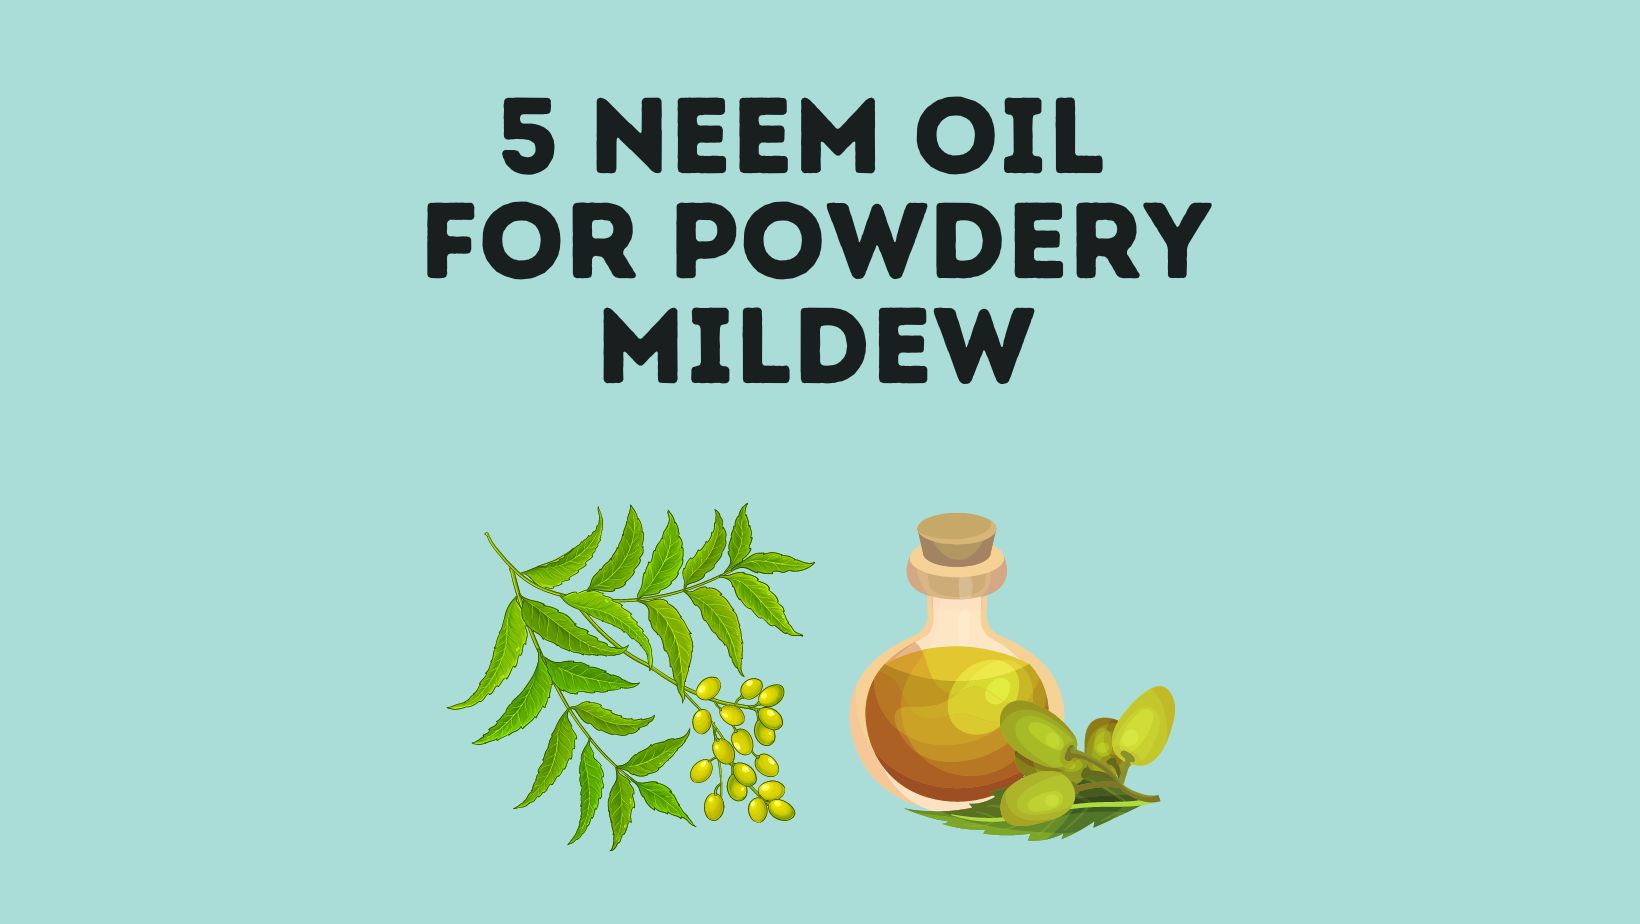 Neem Oil For Powdery Mildew